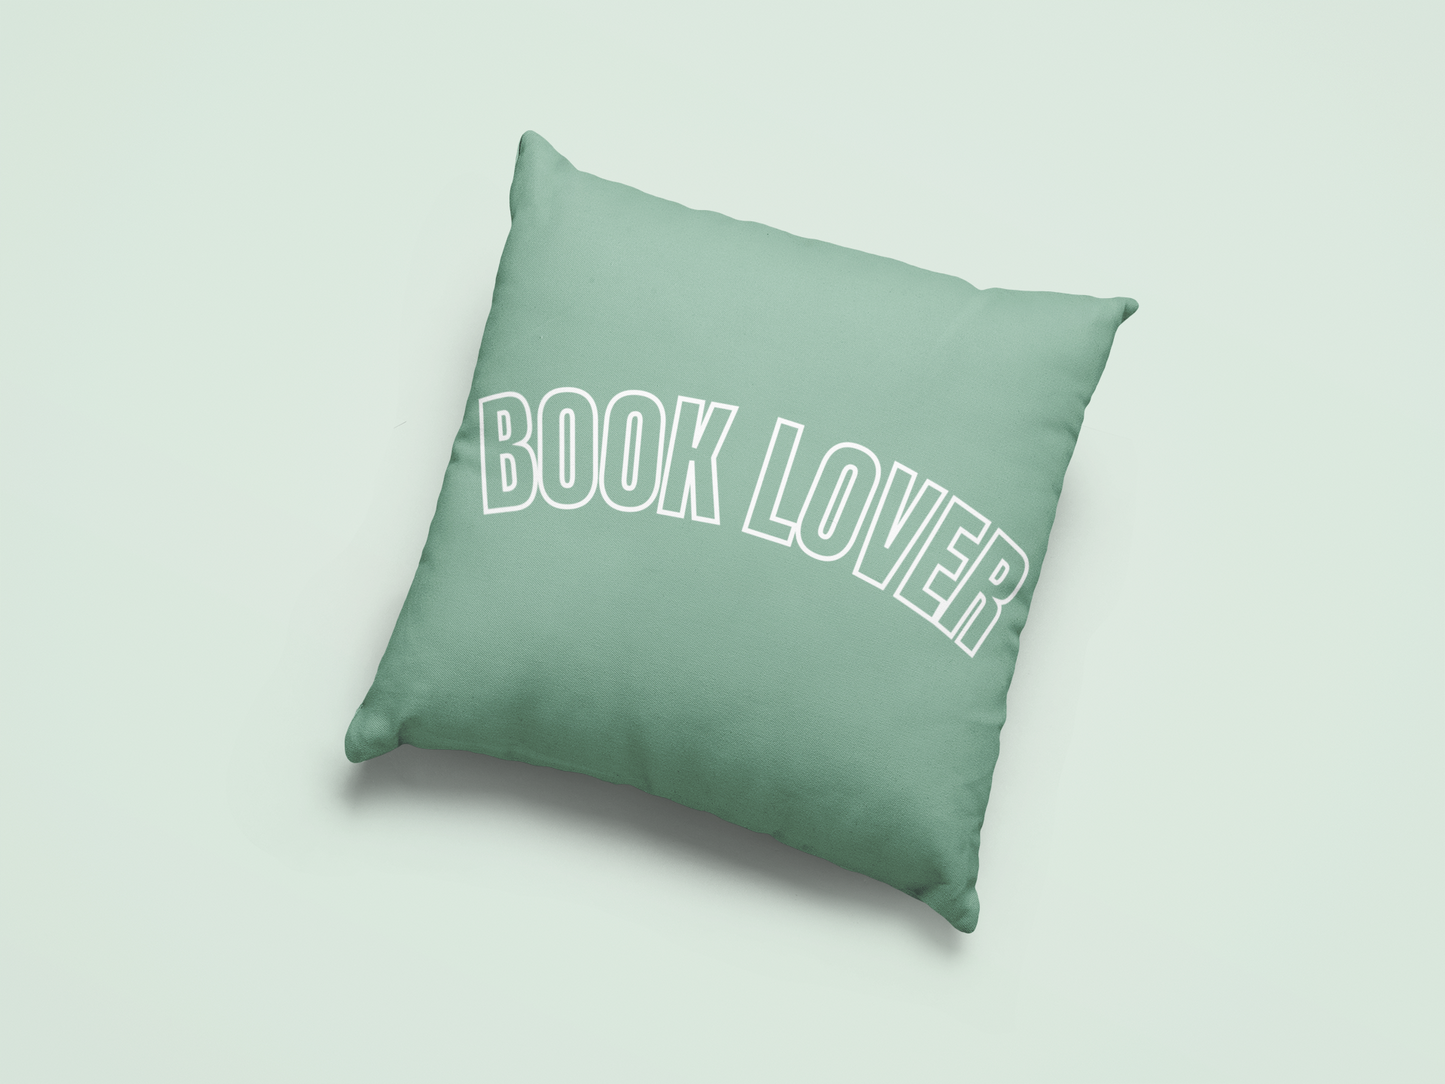 Book Lover Pillow Case